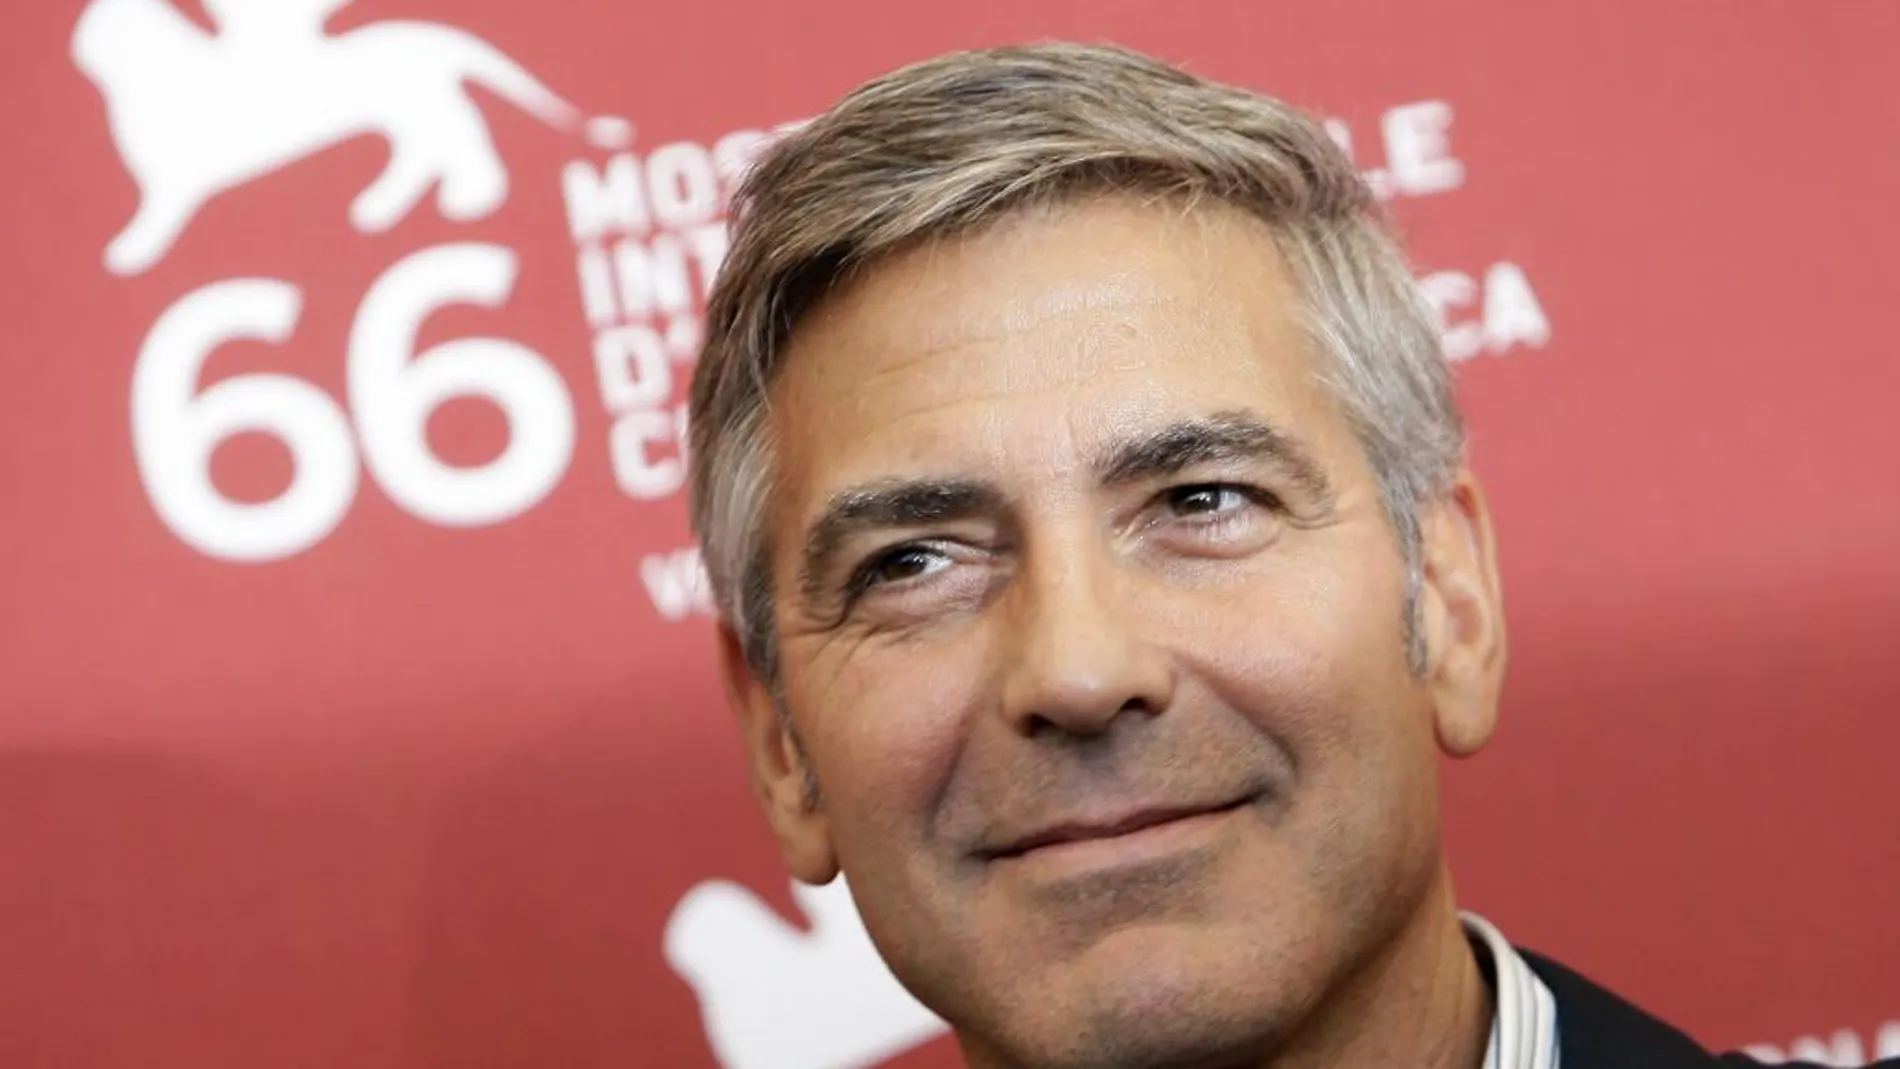 El actor George Clooney durante el 66º Festival de Cine de Venecia de 2009.